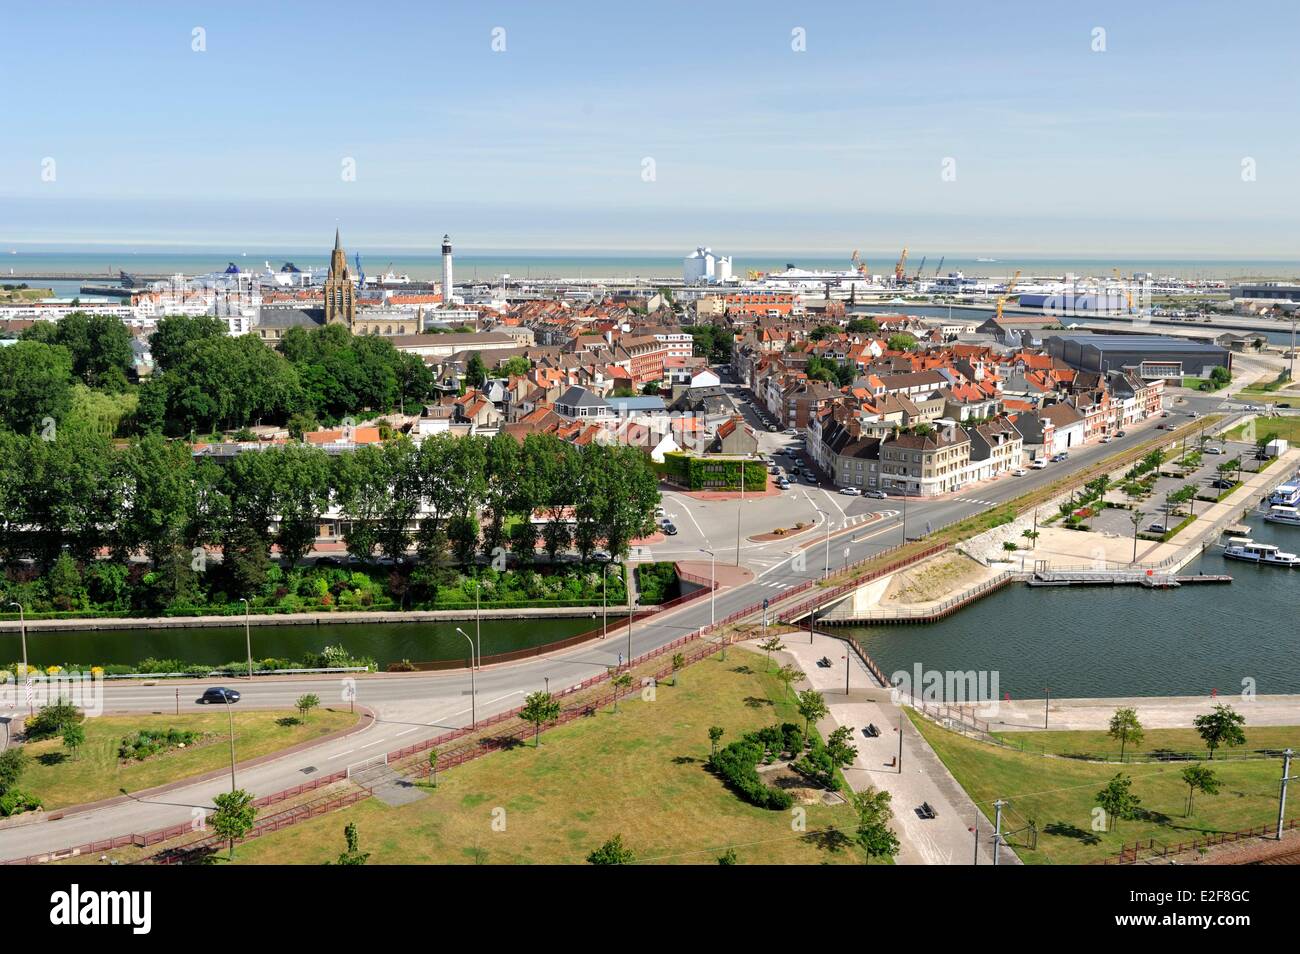 France, Pas de Calais, Calais, overlooking the city and harbor Stock Photo